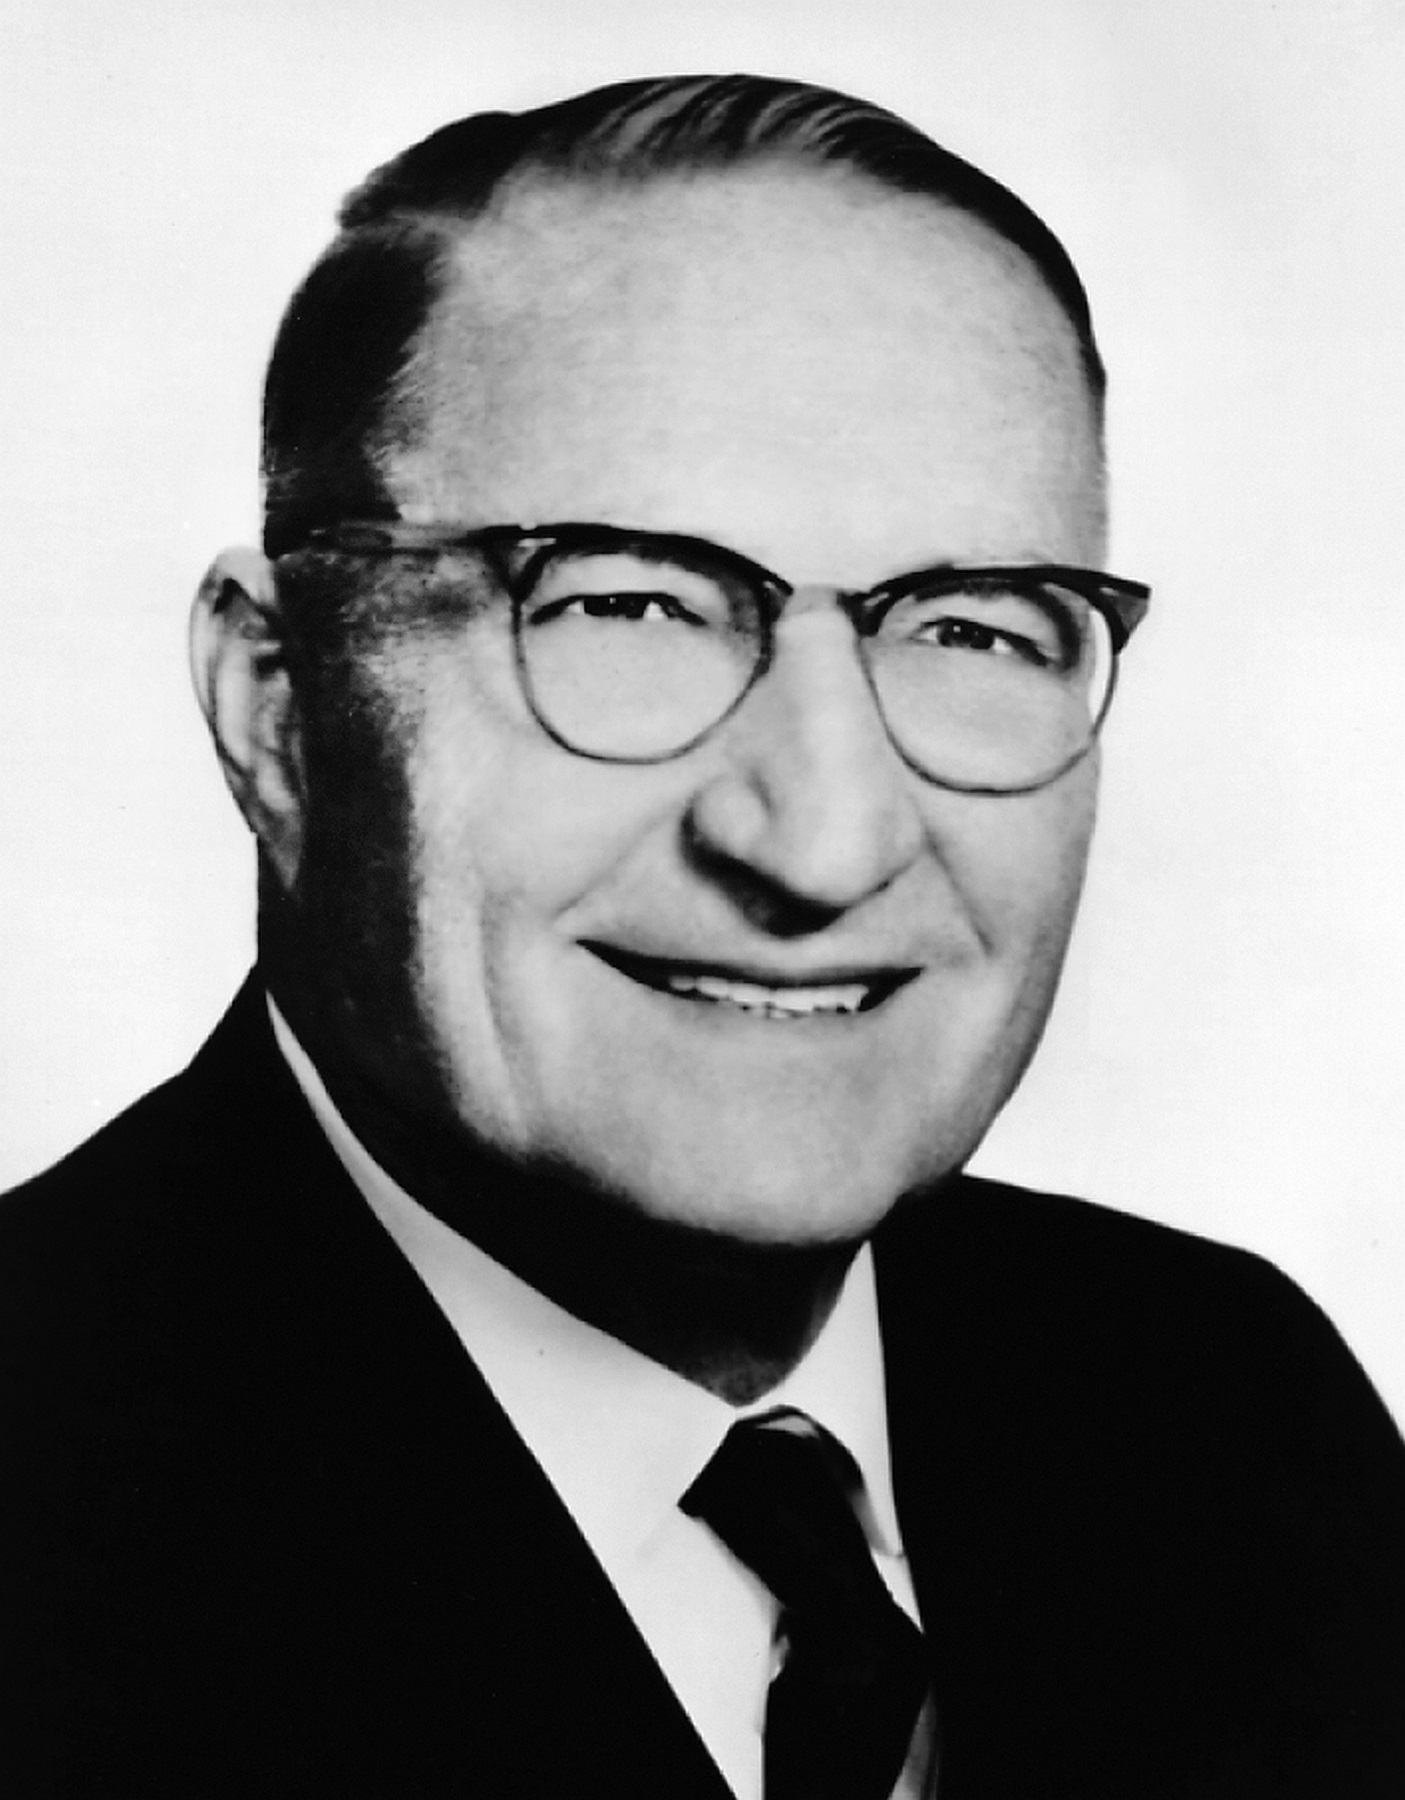 Edward M. Knabusch